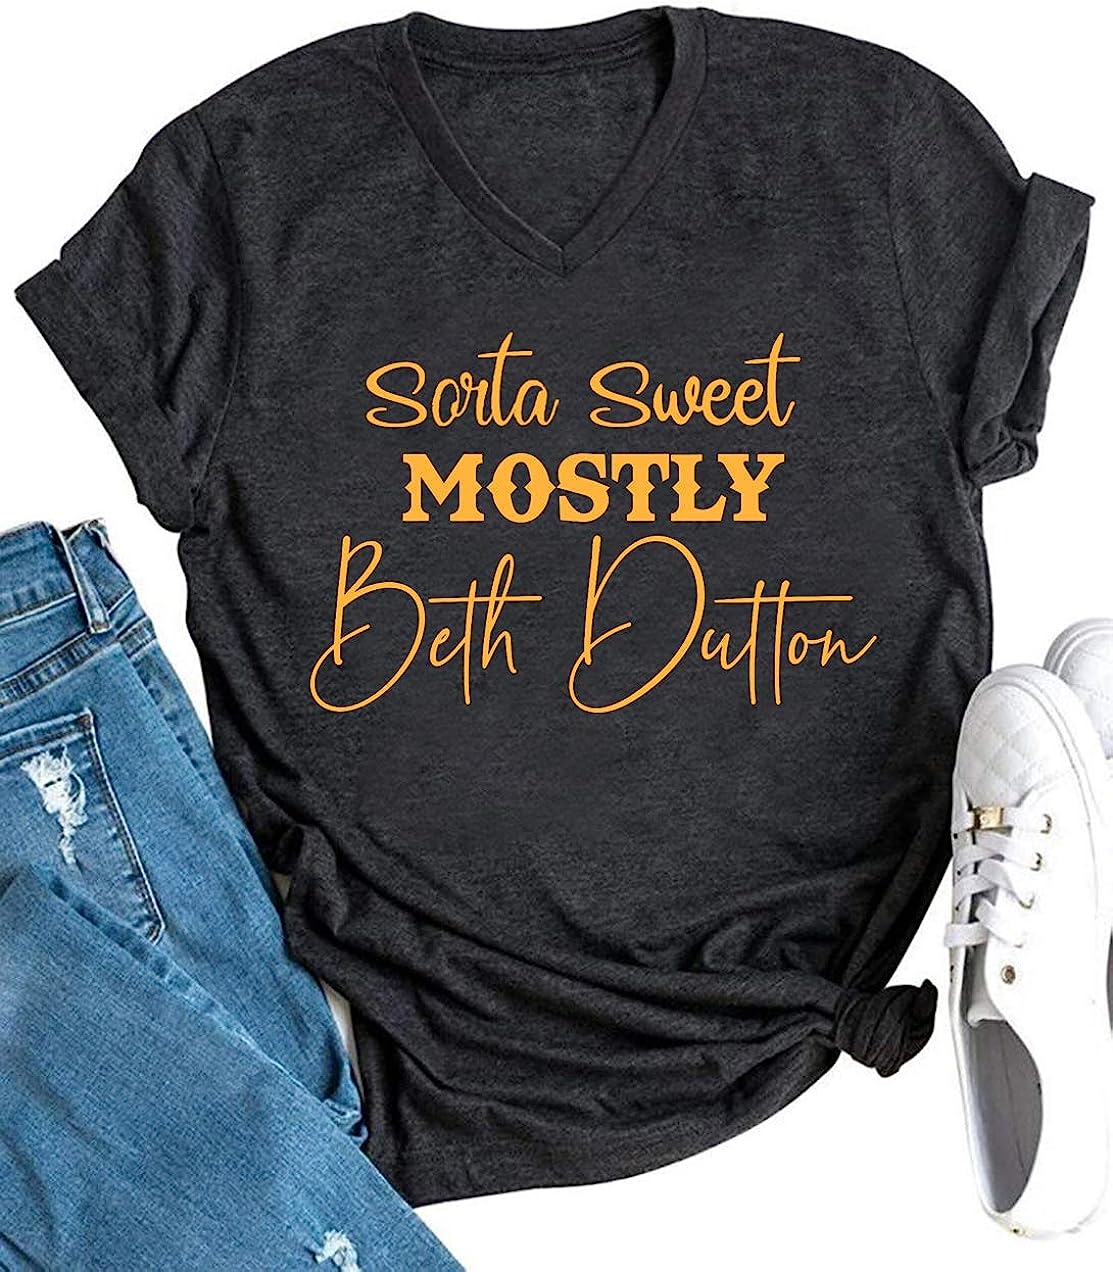  Sorta Sweet Sorta Beth Dutton Shirt Women Funny Saying